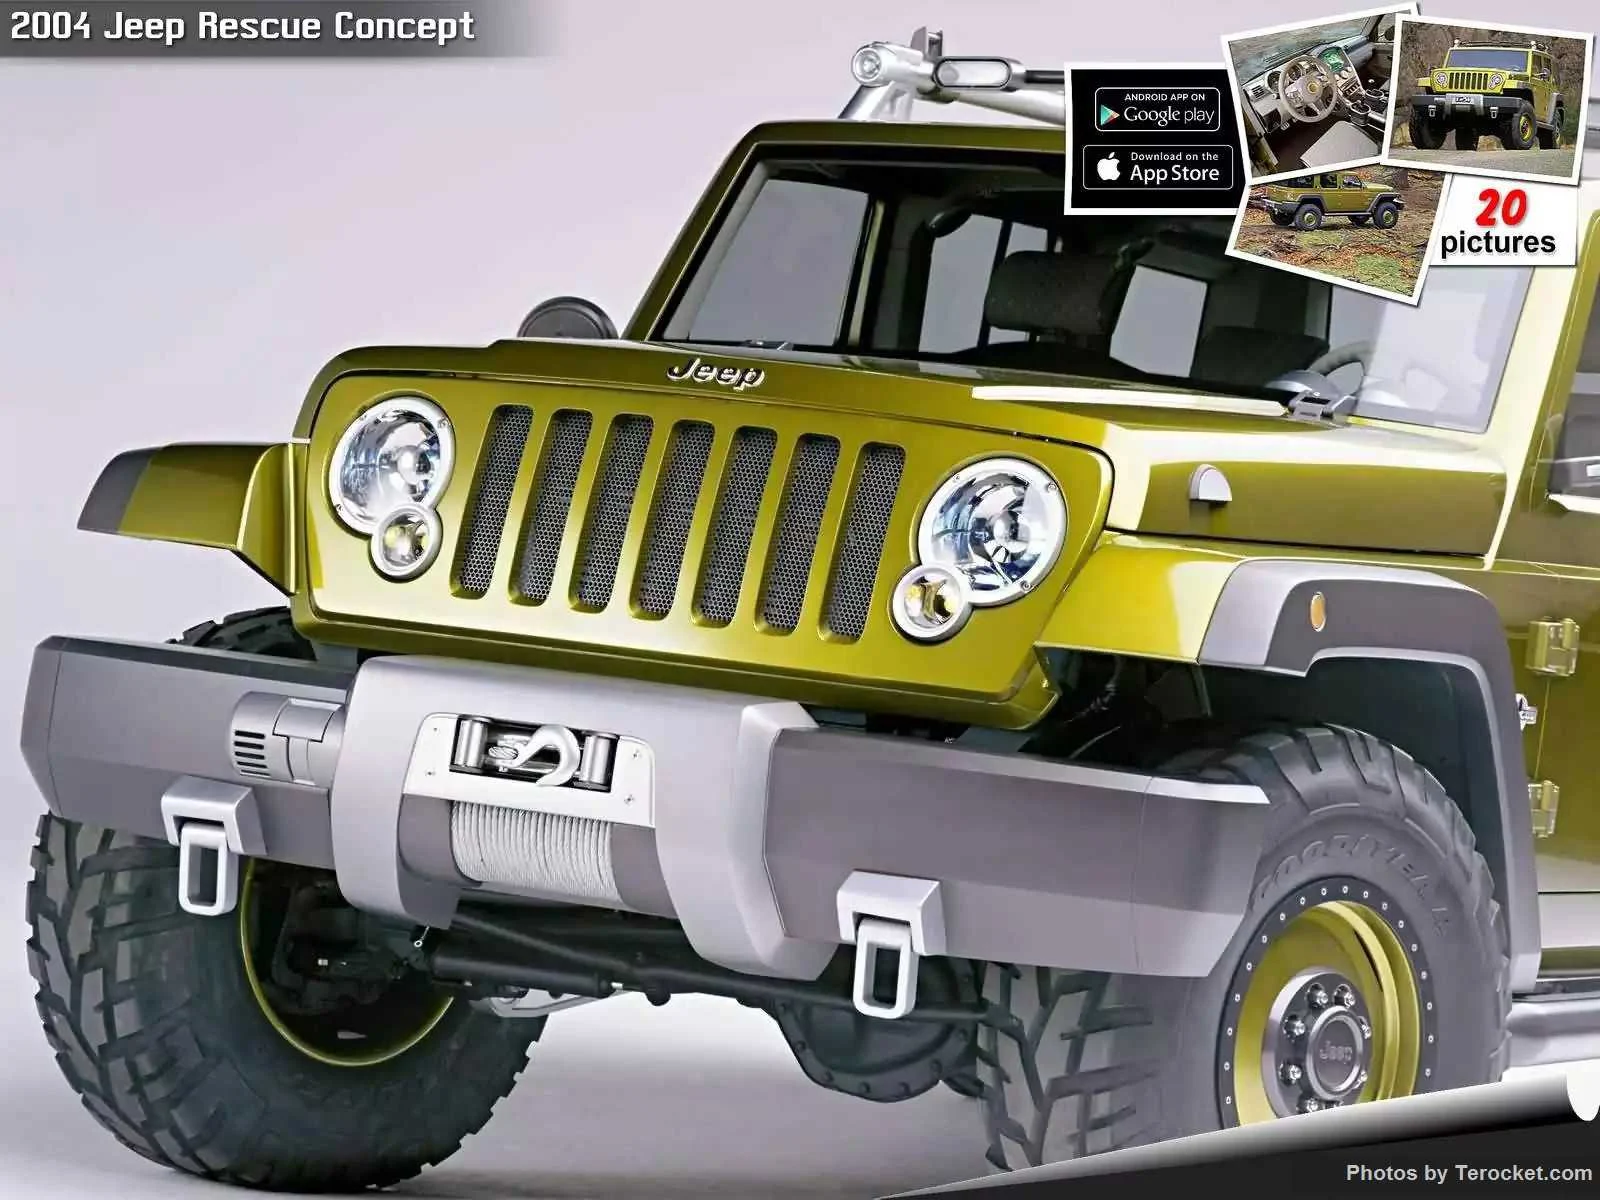 Hình ảnh xe ô tô Jeep Rescue Concept 2004 & nội ngoại thất